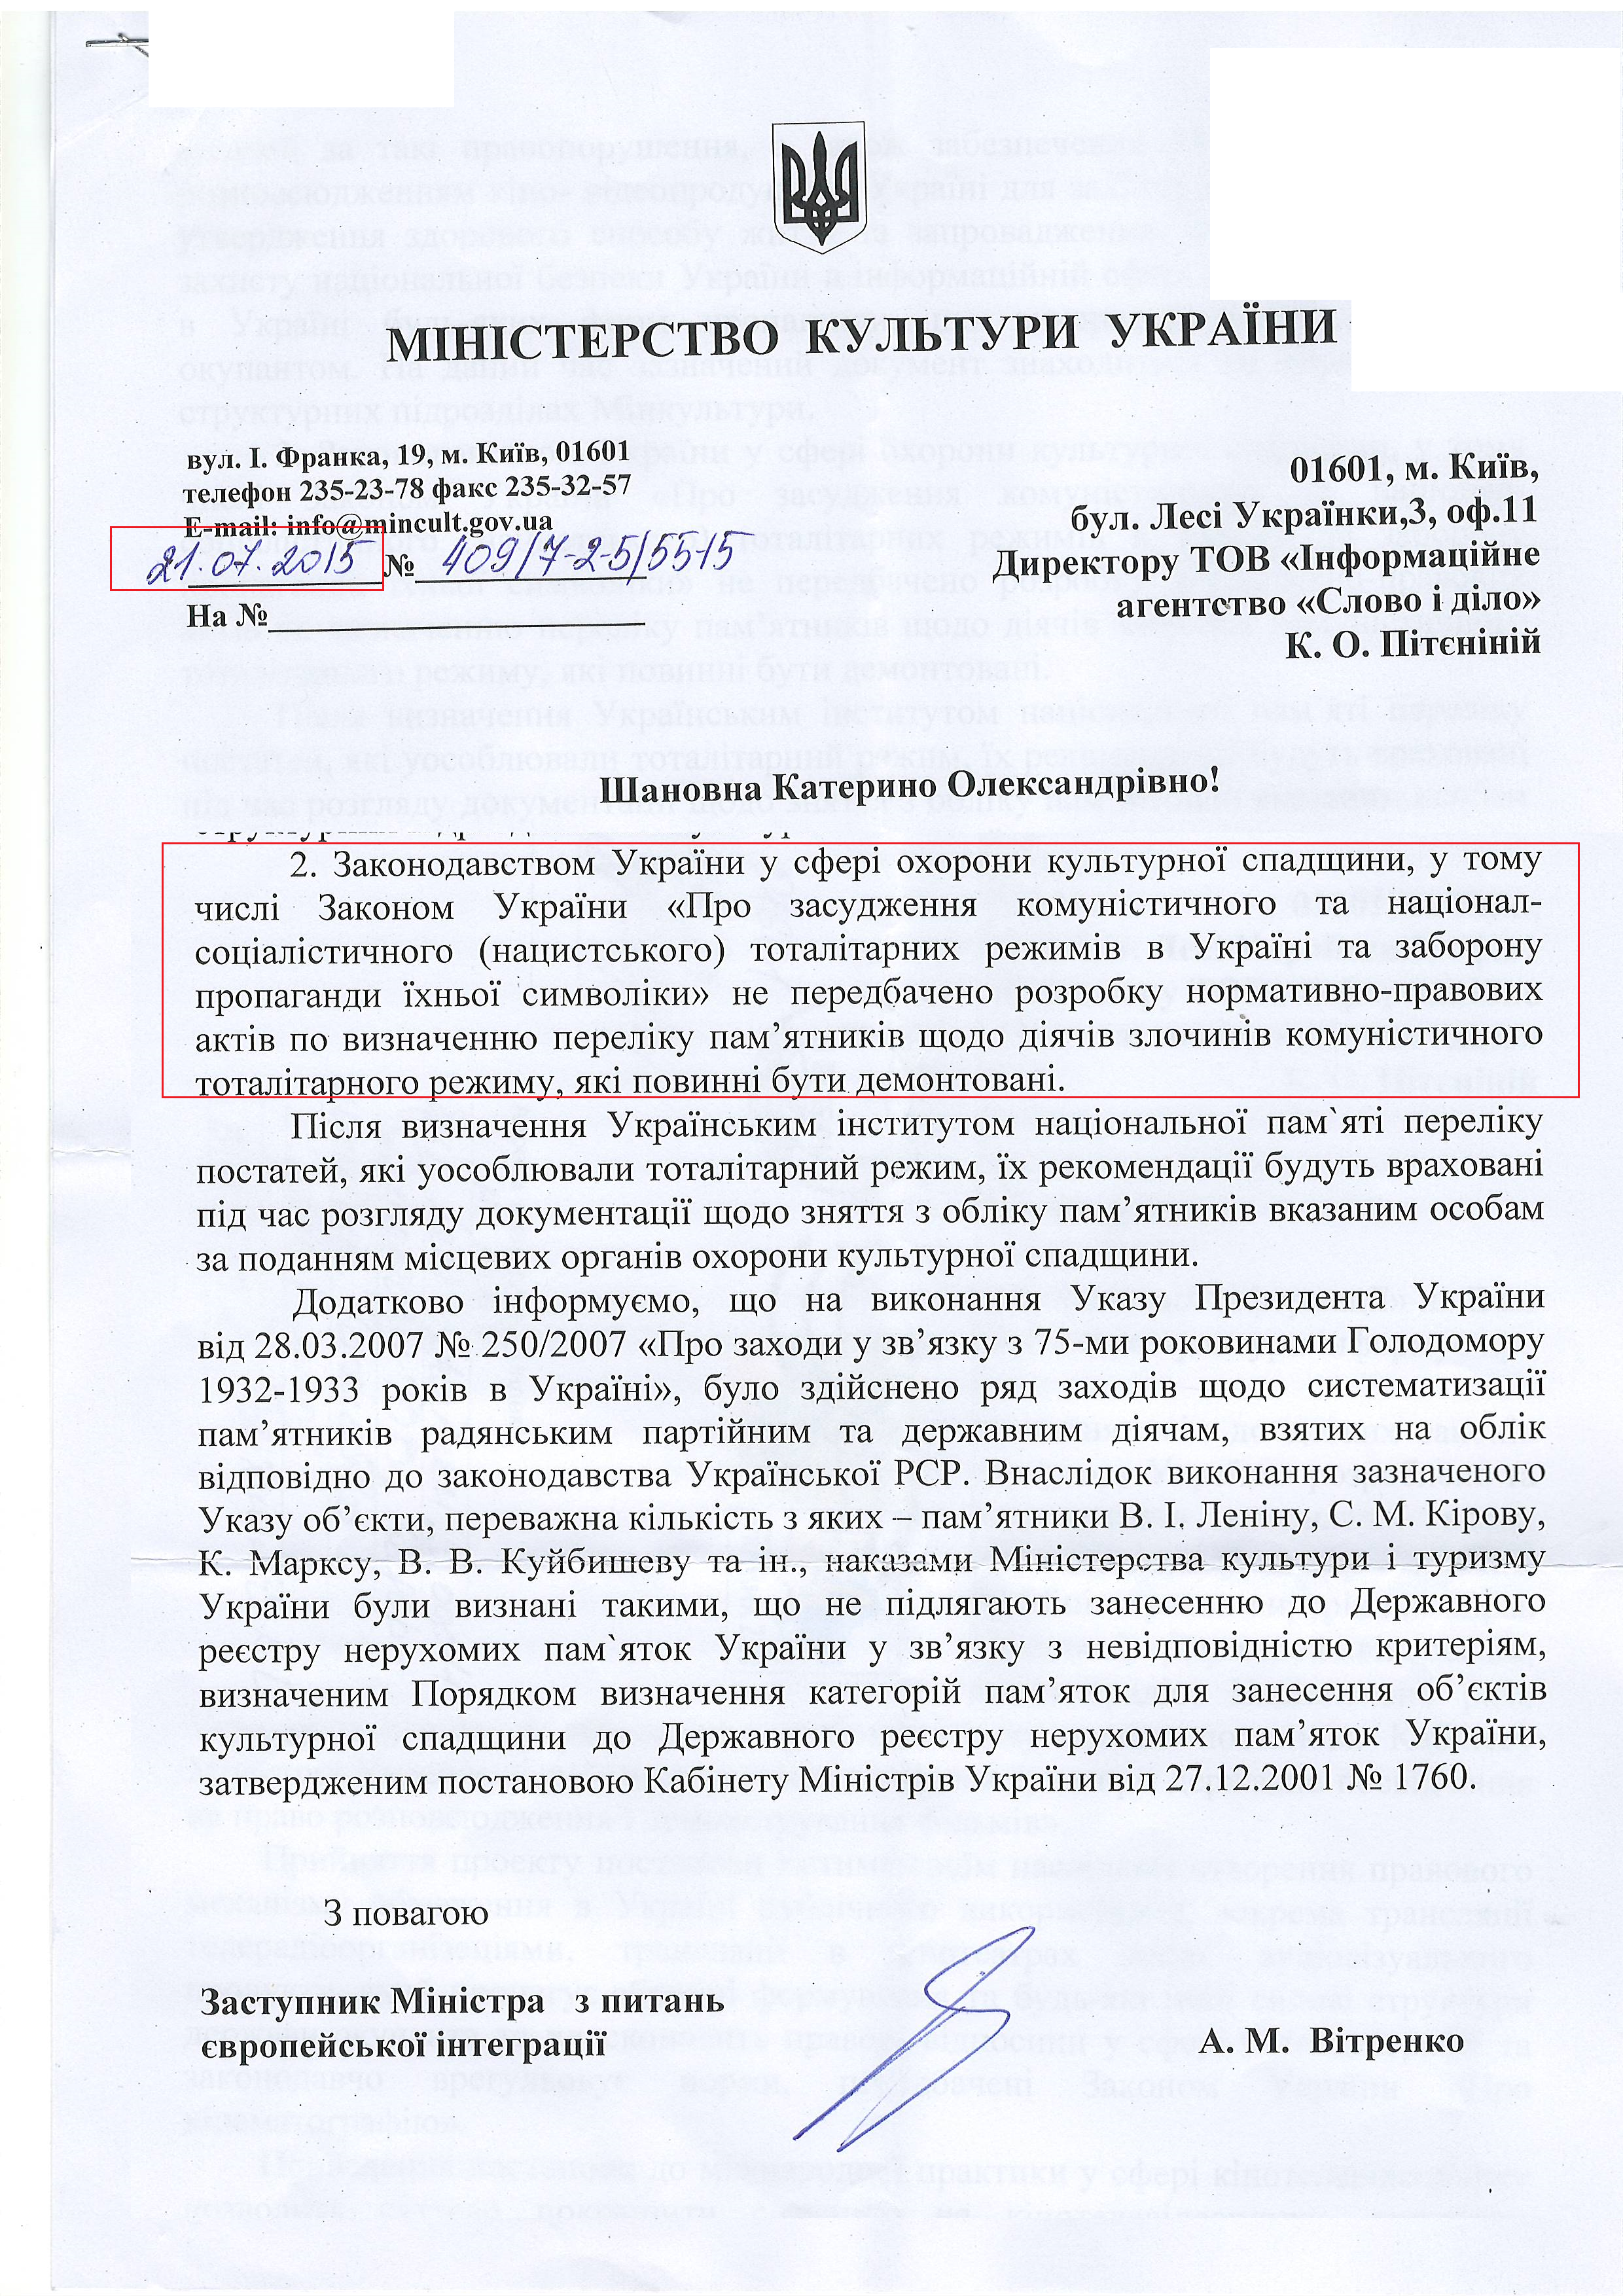 Лист міністерства культури України від 21 липня 2015 року